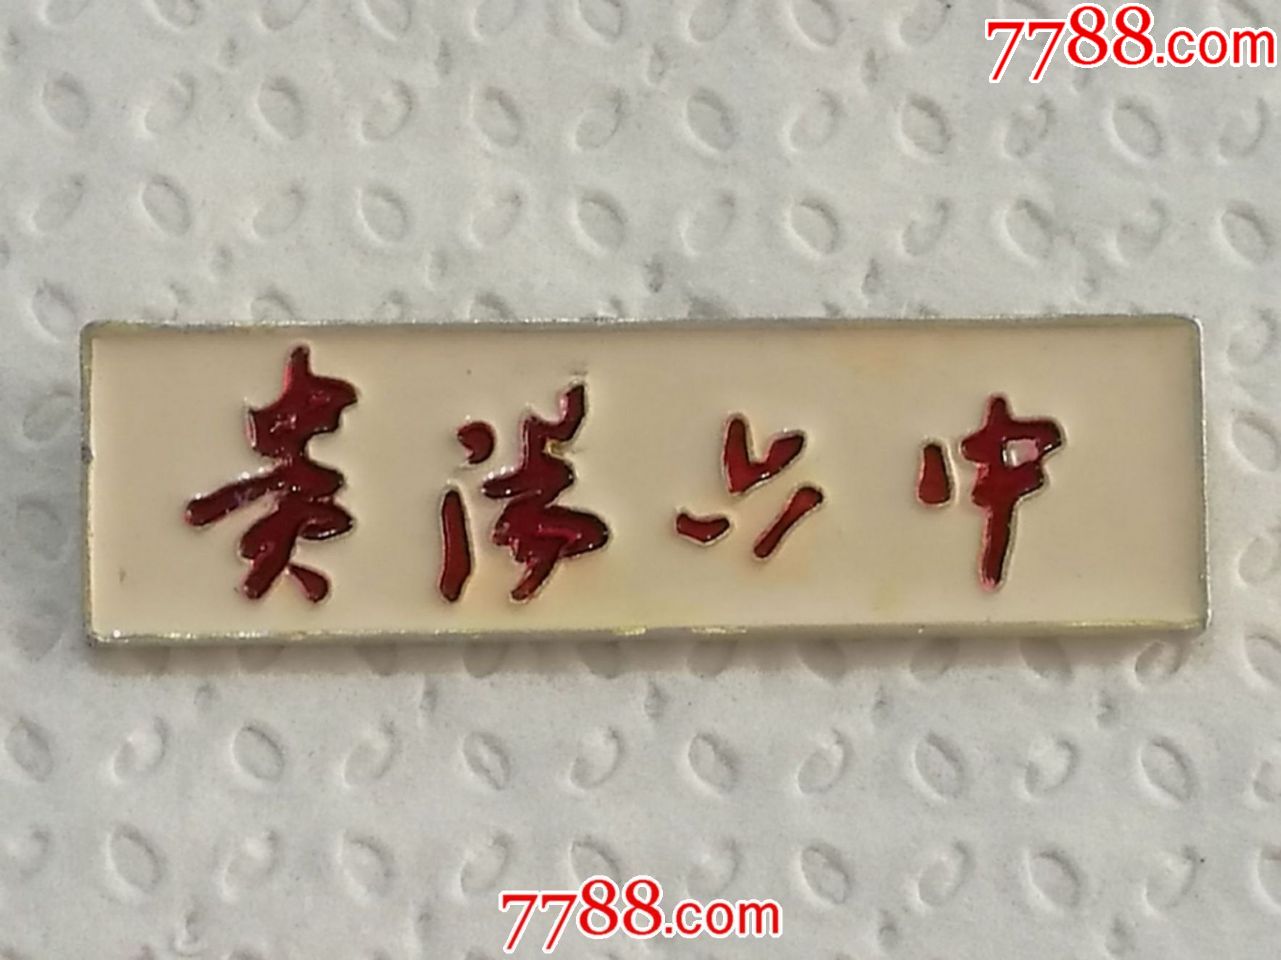 贵阳六中-au18300630-7788校徽收藏